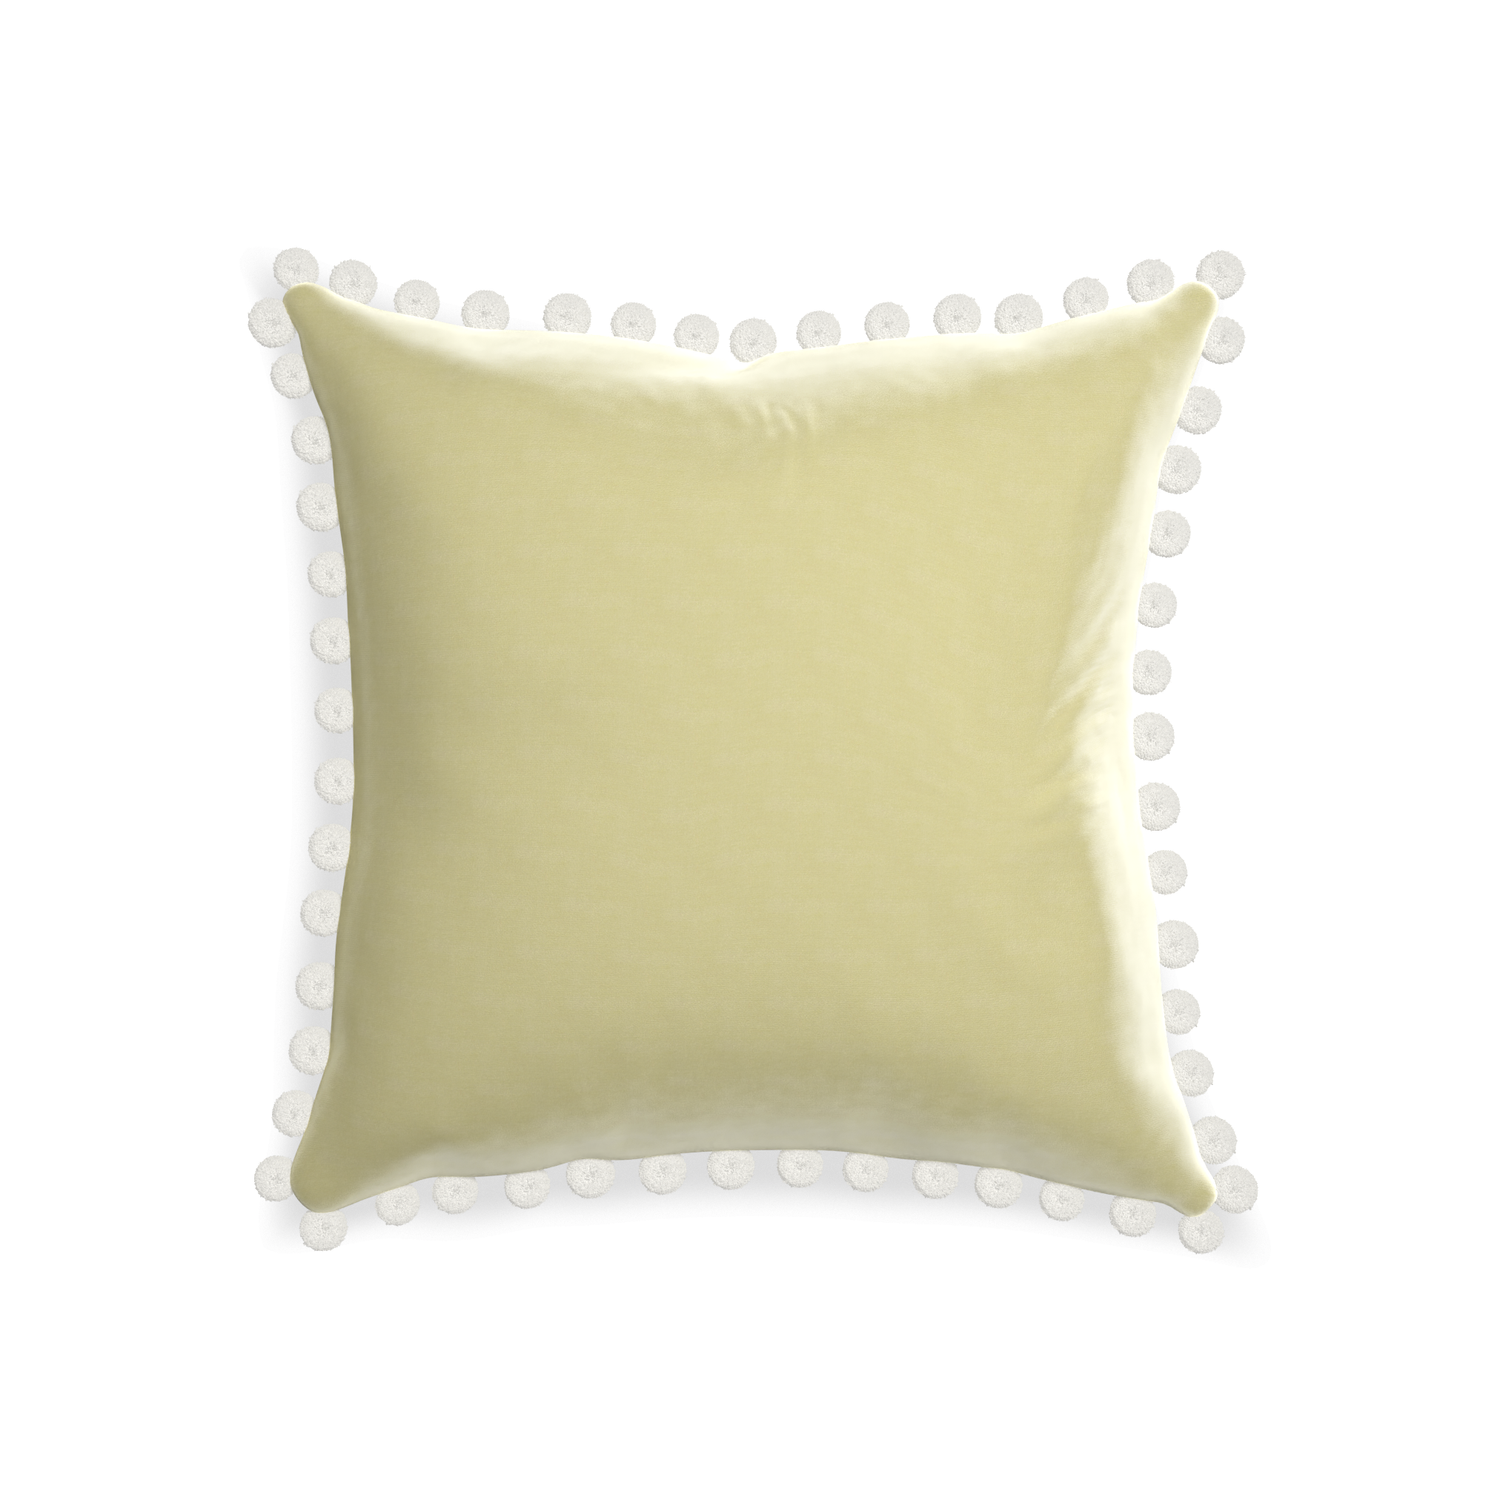 20-square pear velvet custom pillow with snow pom pom on white background